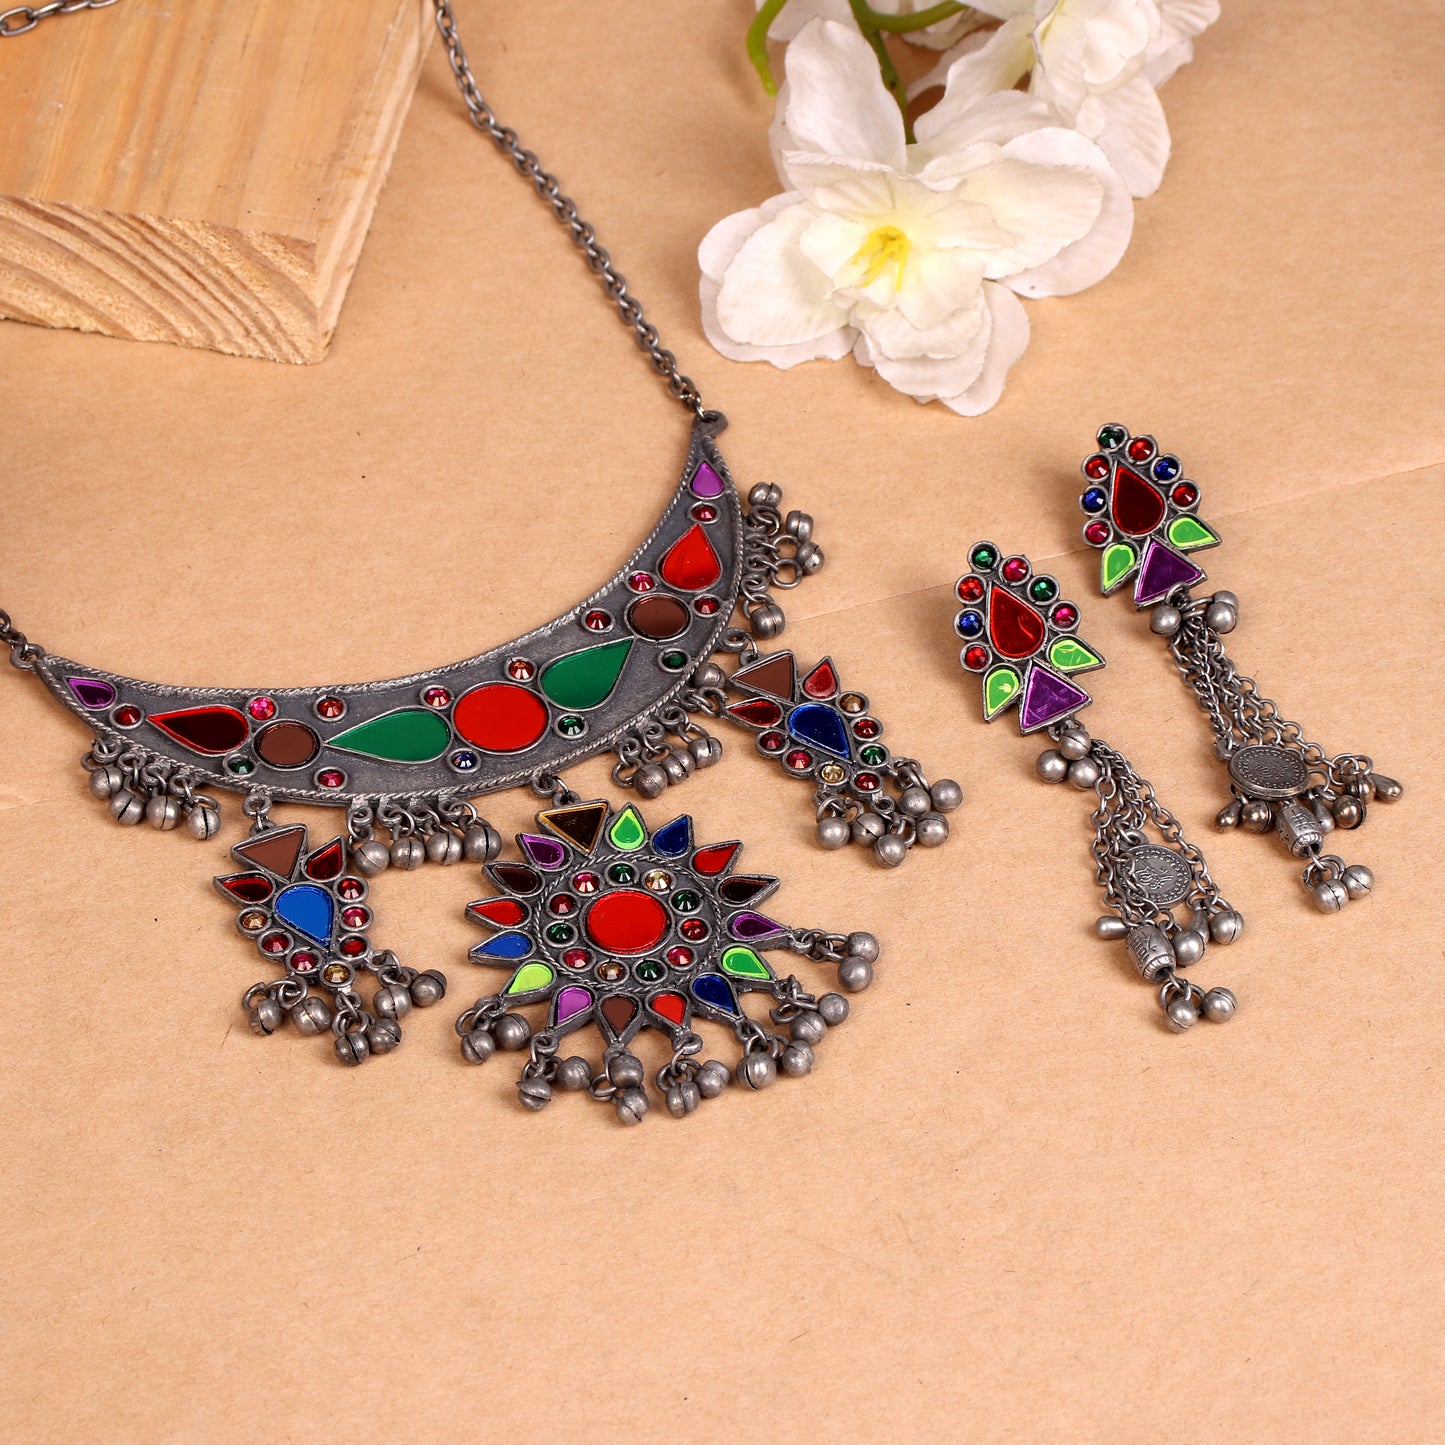 The Munfarid Hasli Necklace Set